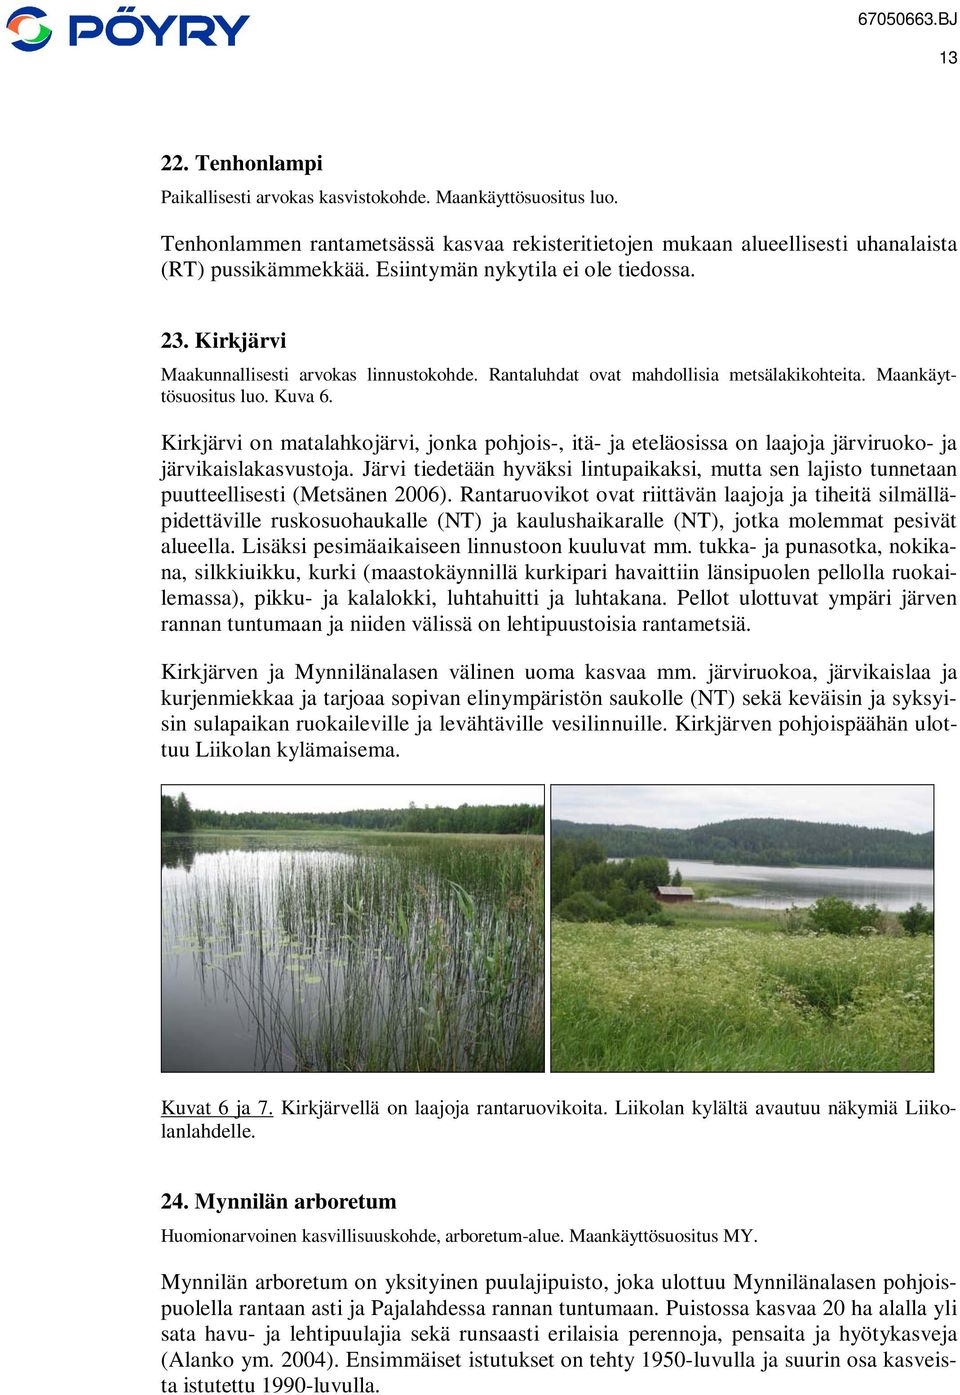 Kirkjärvi on matalahkojärvi, jonka pohjois-, itä- ja eteläosissa on laajoja järviruoko- ja järvikaislakasvustoja.